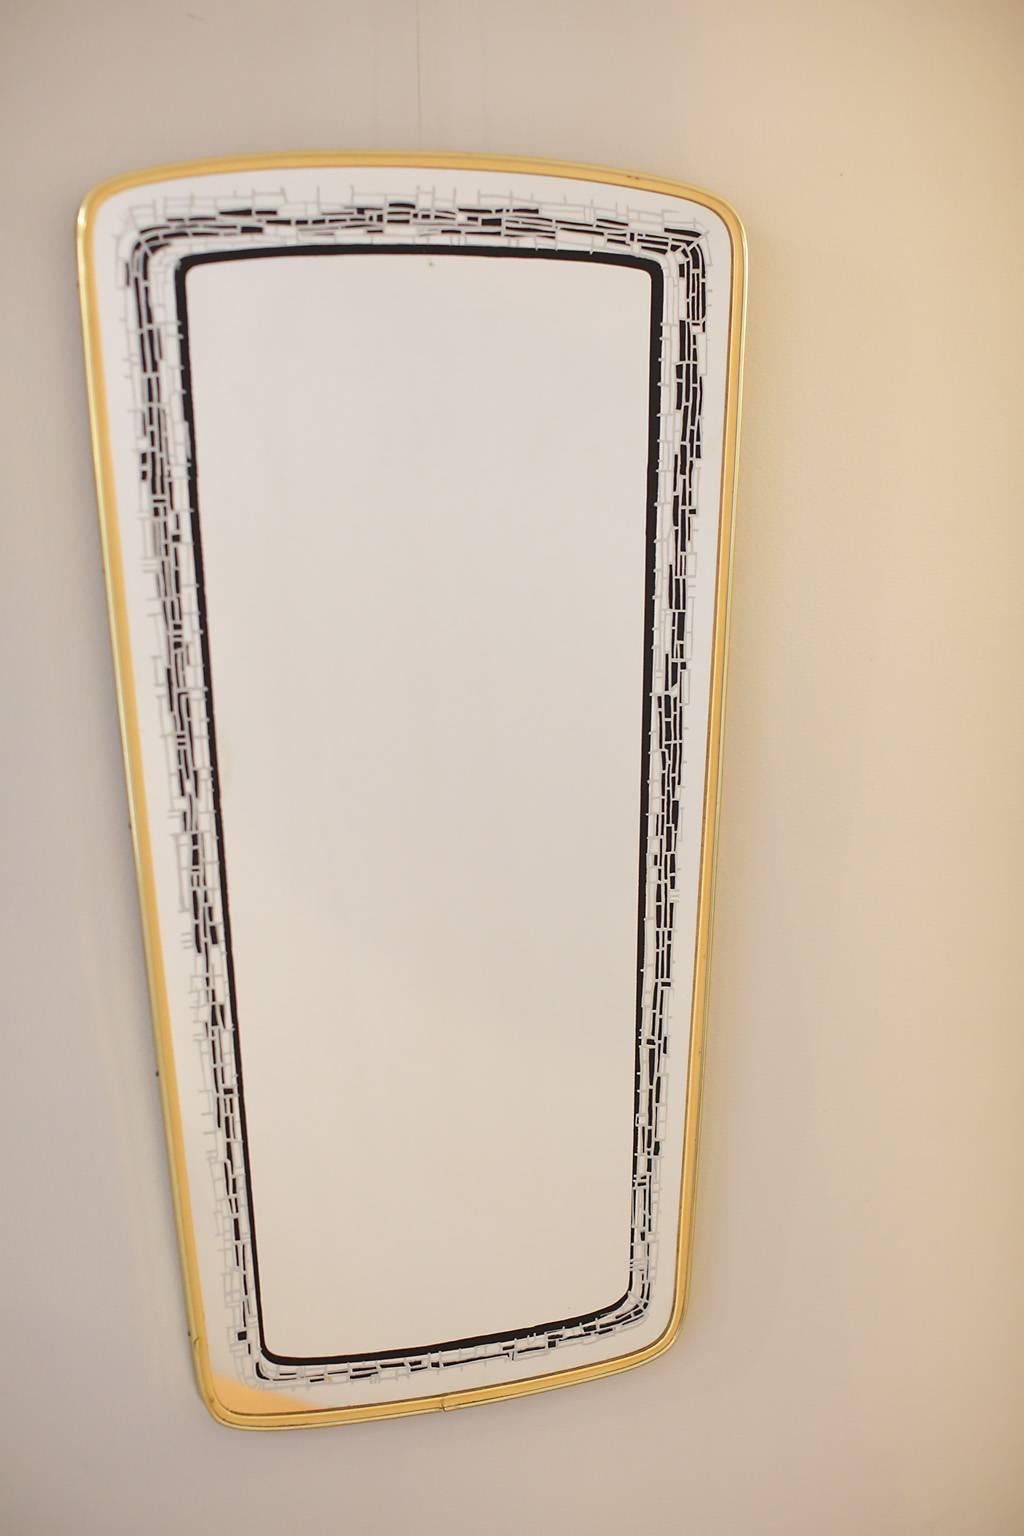 Églomisé mirror with brass frame.